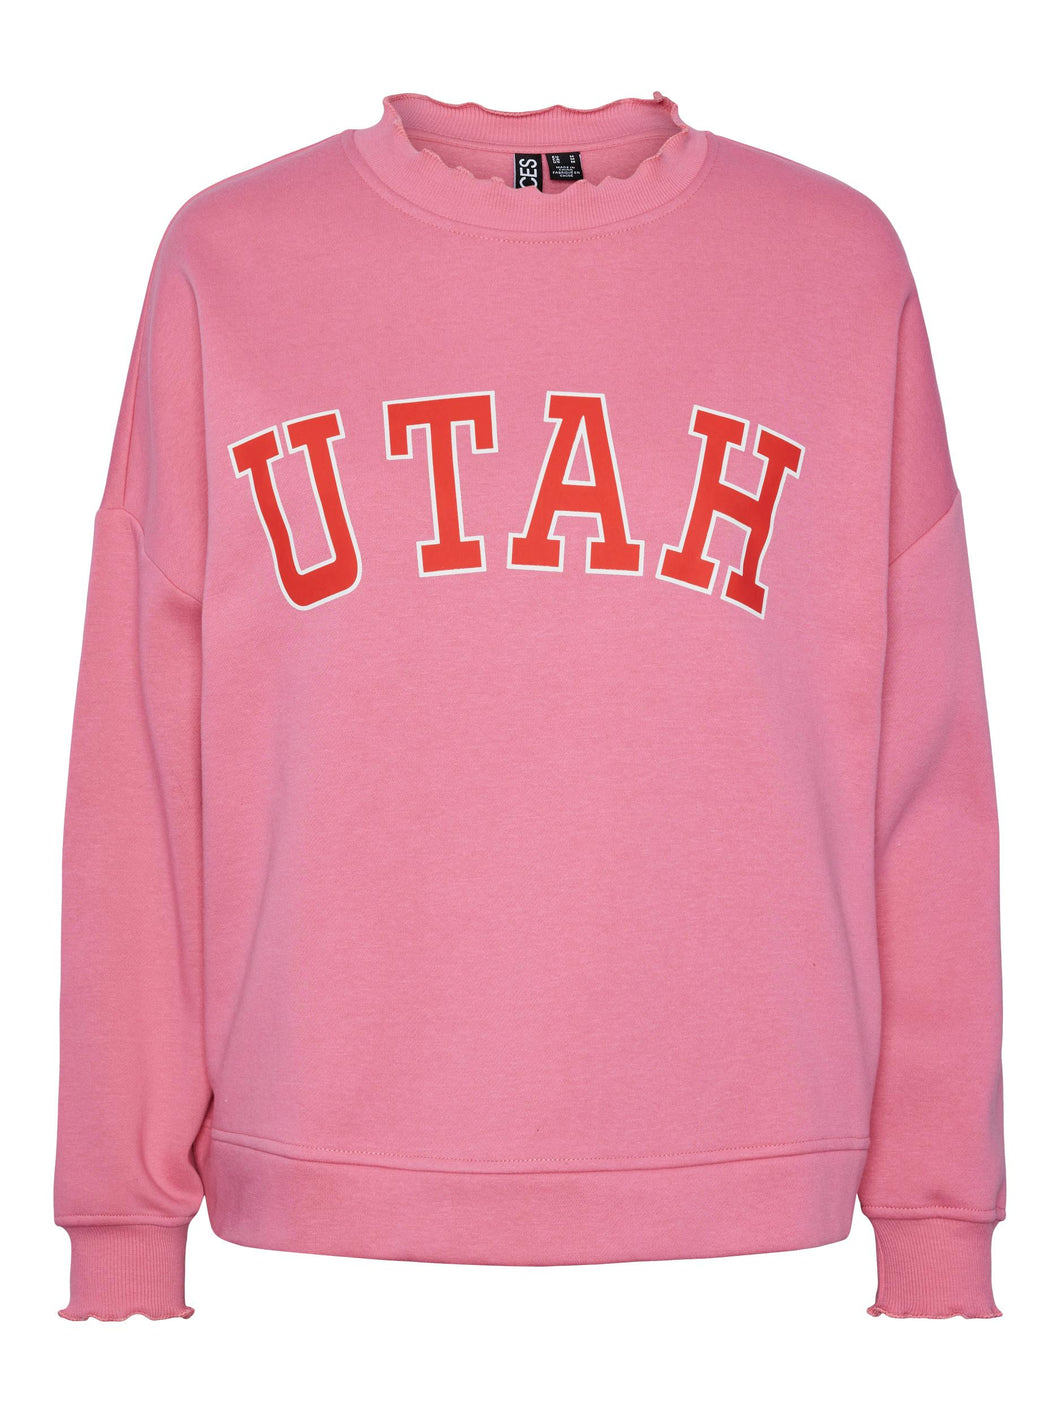 Utah Sweatshirt